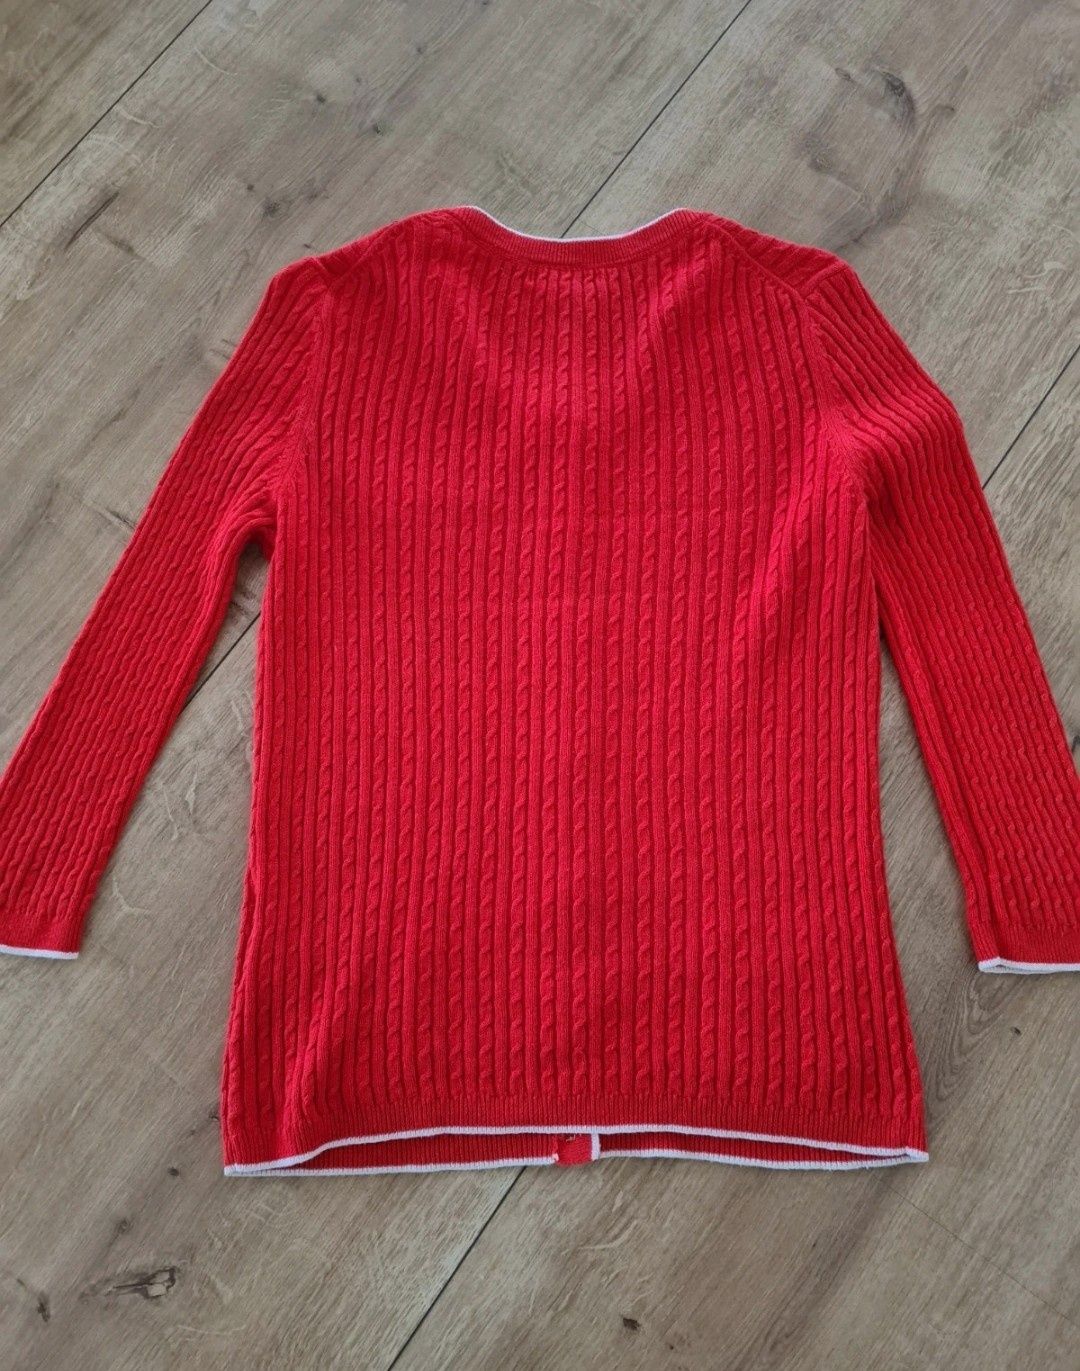 Sweter czerwony 55% Len i 45% Cotton. Warkoczowy wzór. Rozmiar XS / S